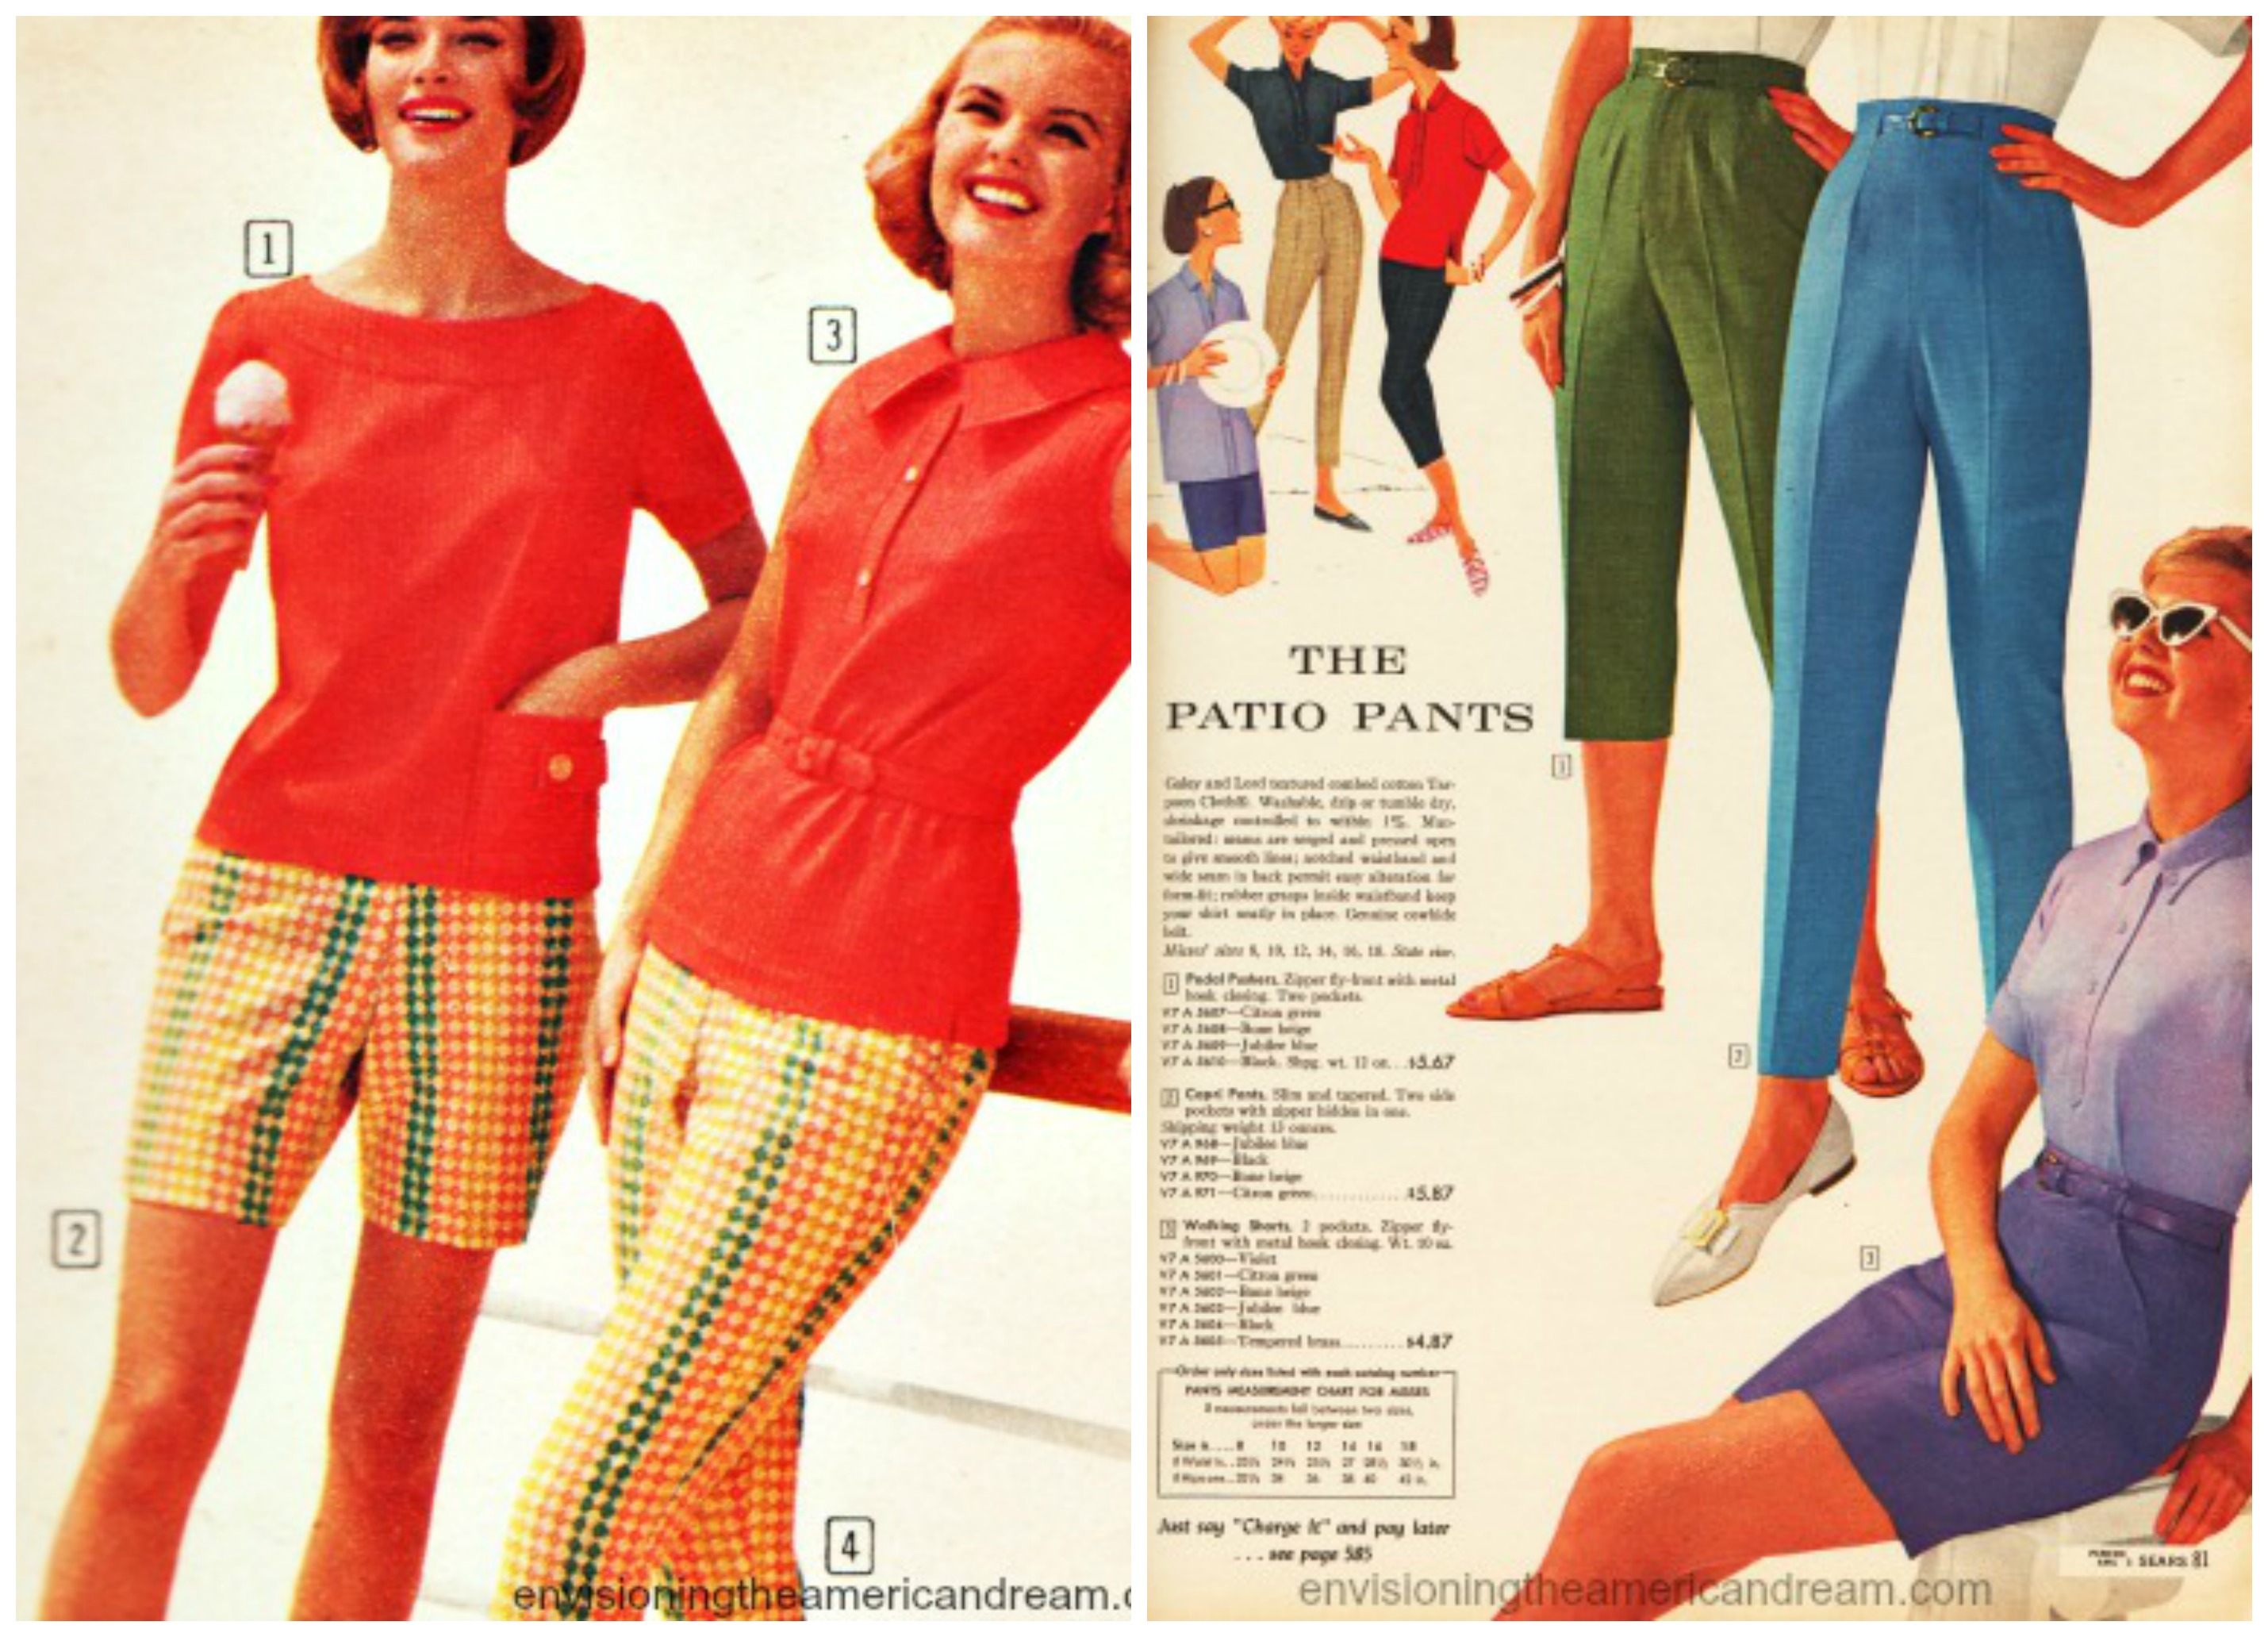 1960s casual women's fashion